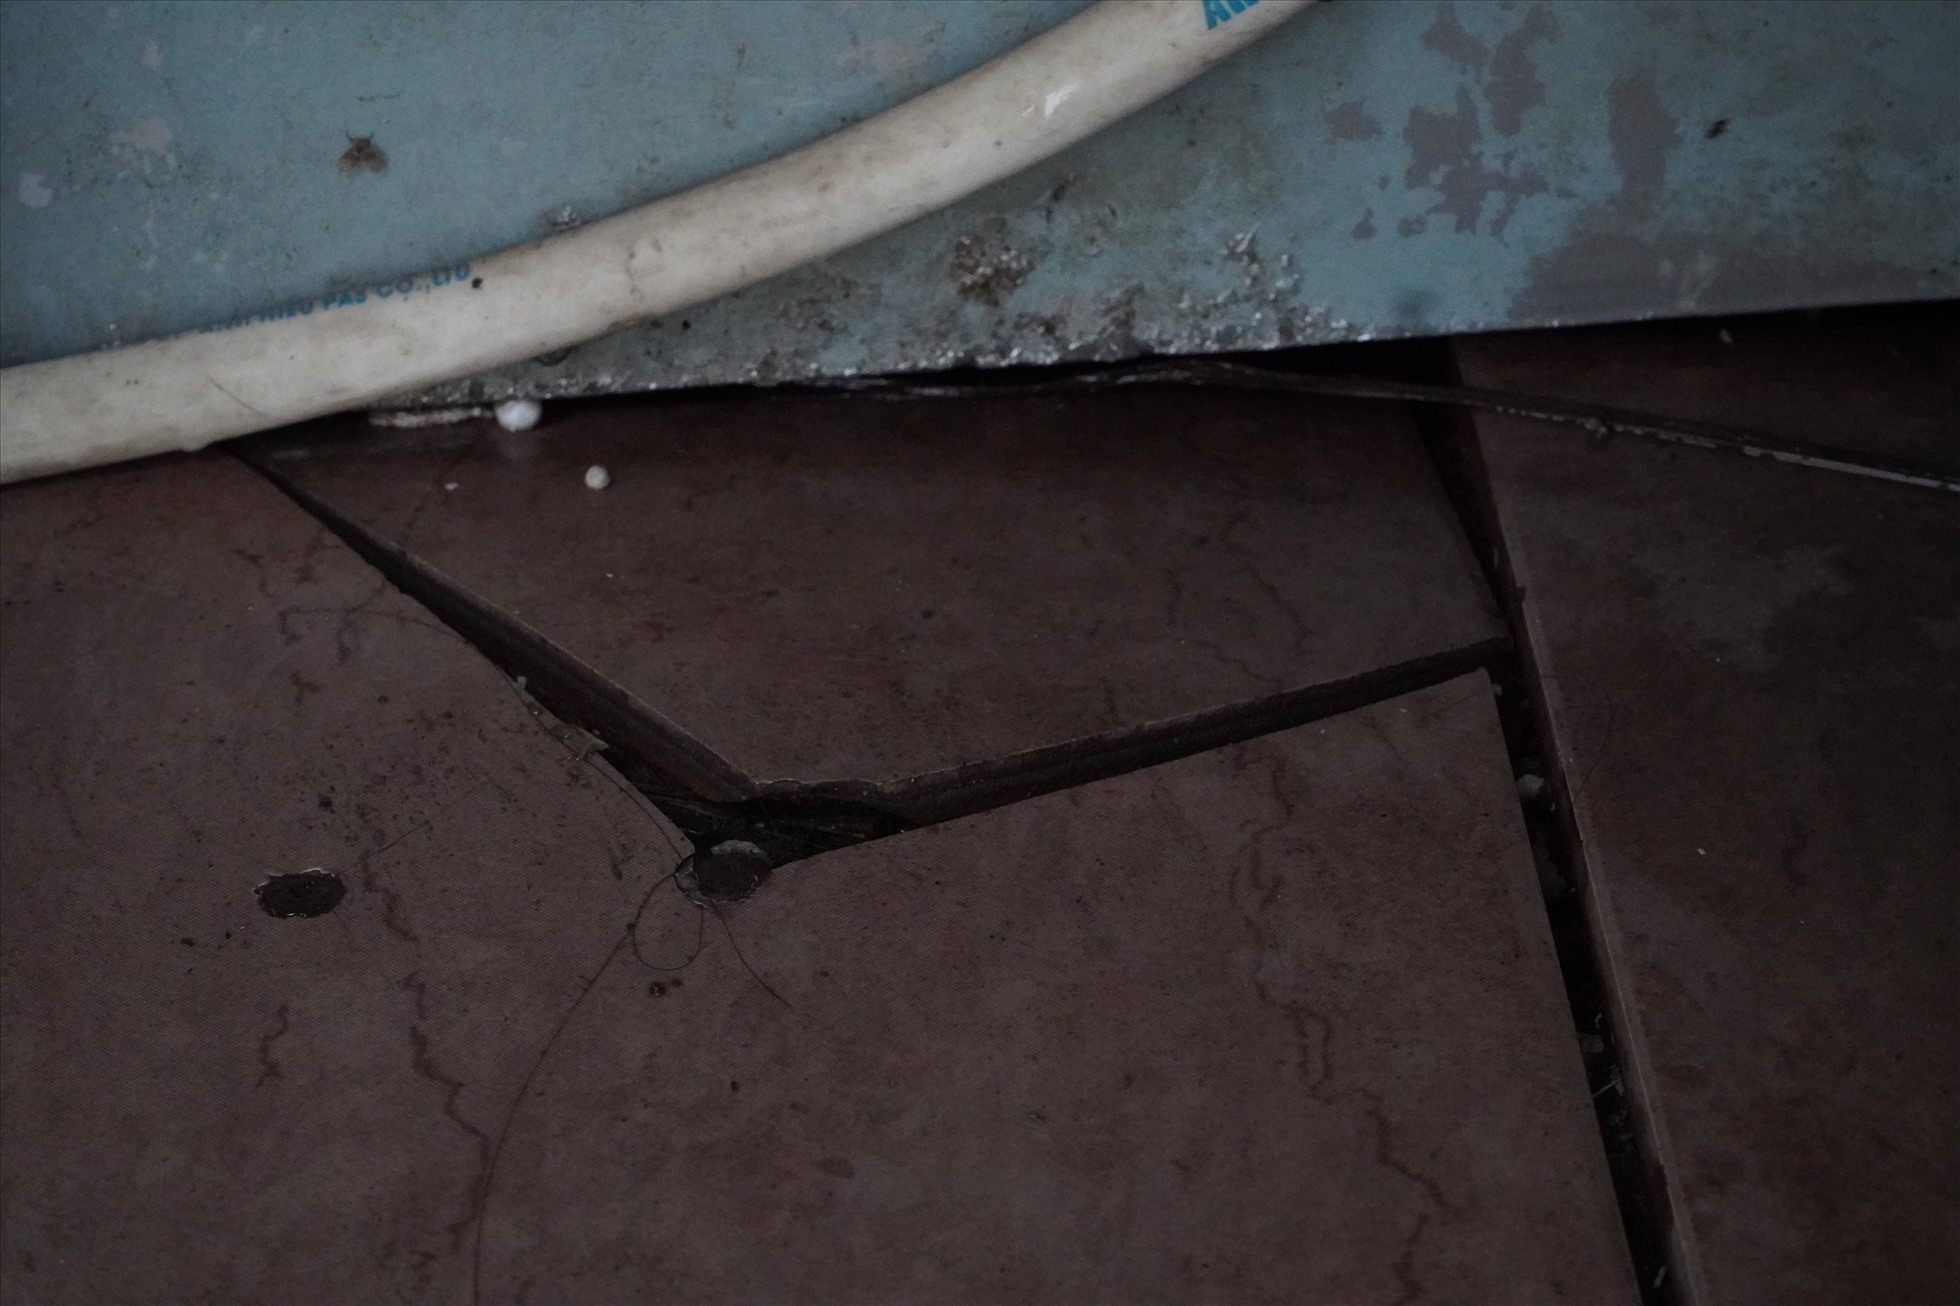 Tại các nhà vệ sinh quanh khu vực bến xe Mỹ Đình, nền gạch bị vỡ, ngấm nước nên bốc mùi hôi thối khó chịu.